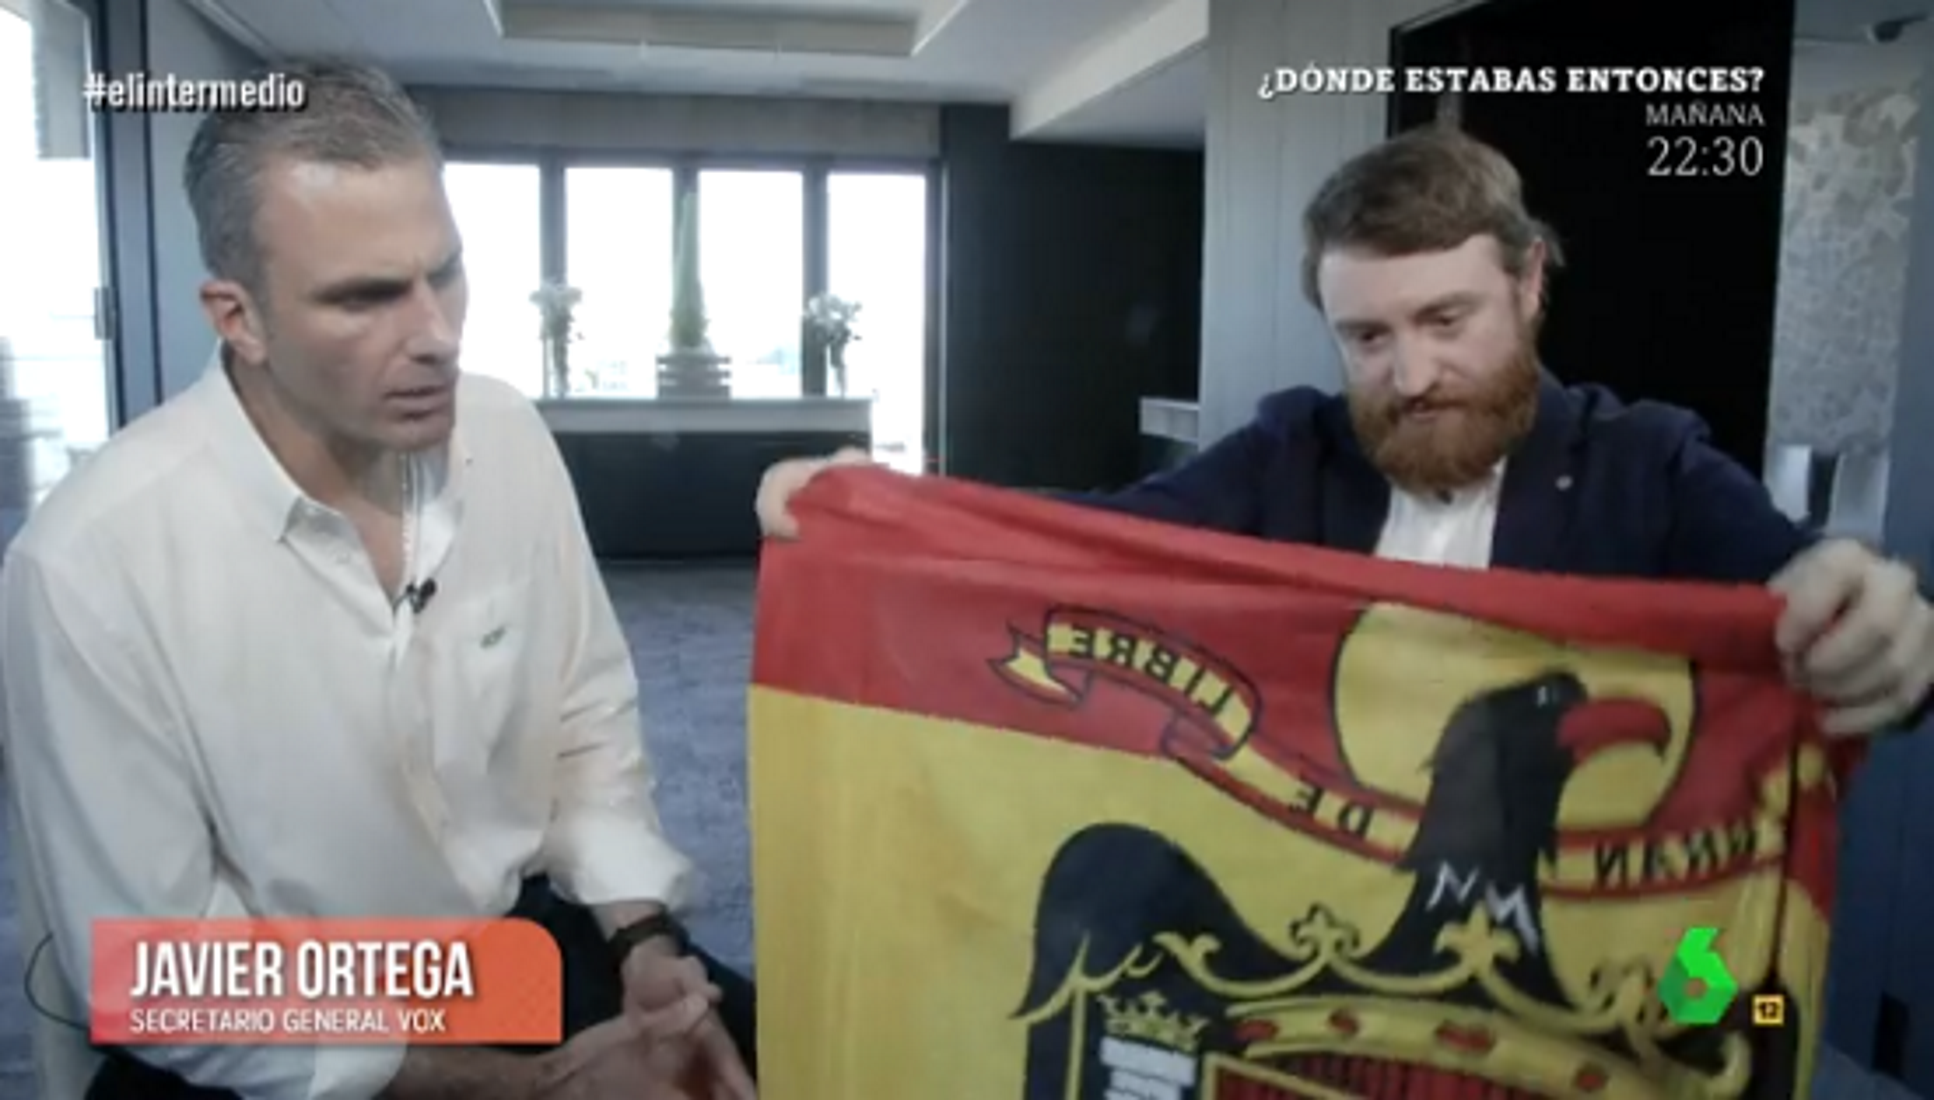 'El Intermedio' ridiculiza al líder de VOX y le regala una bandera franquista